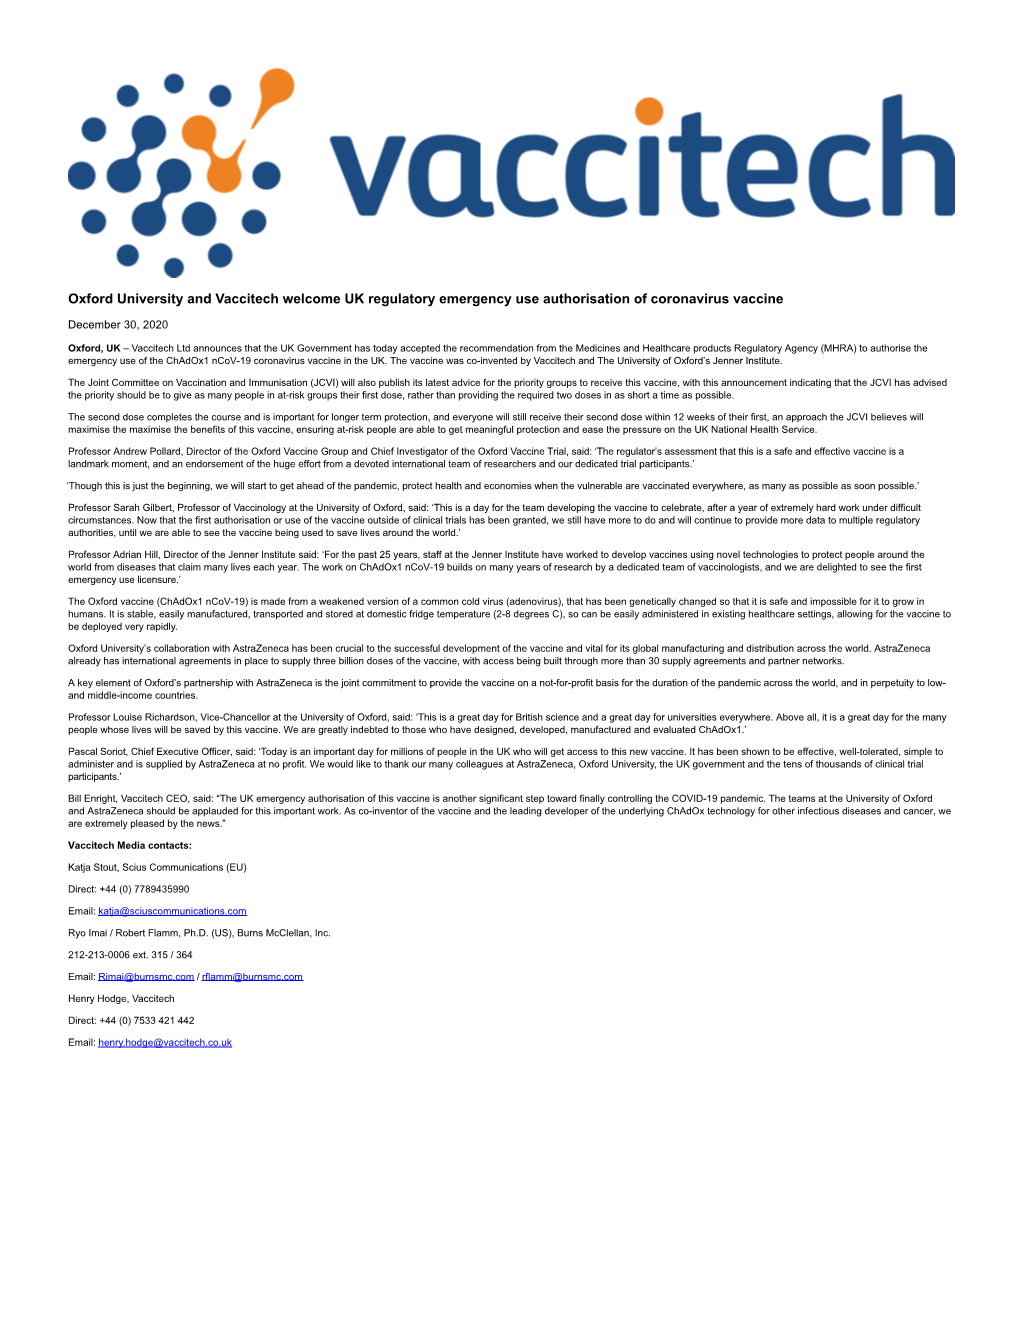 Oxford University and Vaccitech Welcome UK Regulatory Emergency Use Authorisation of Coronavirus Vaccine